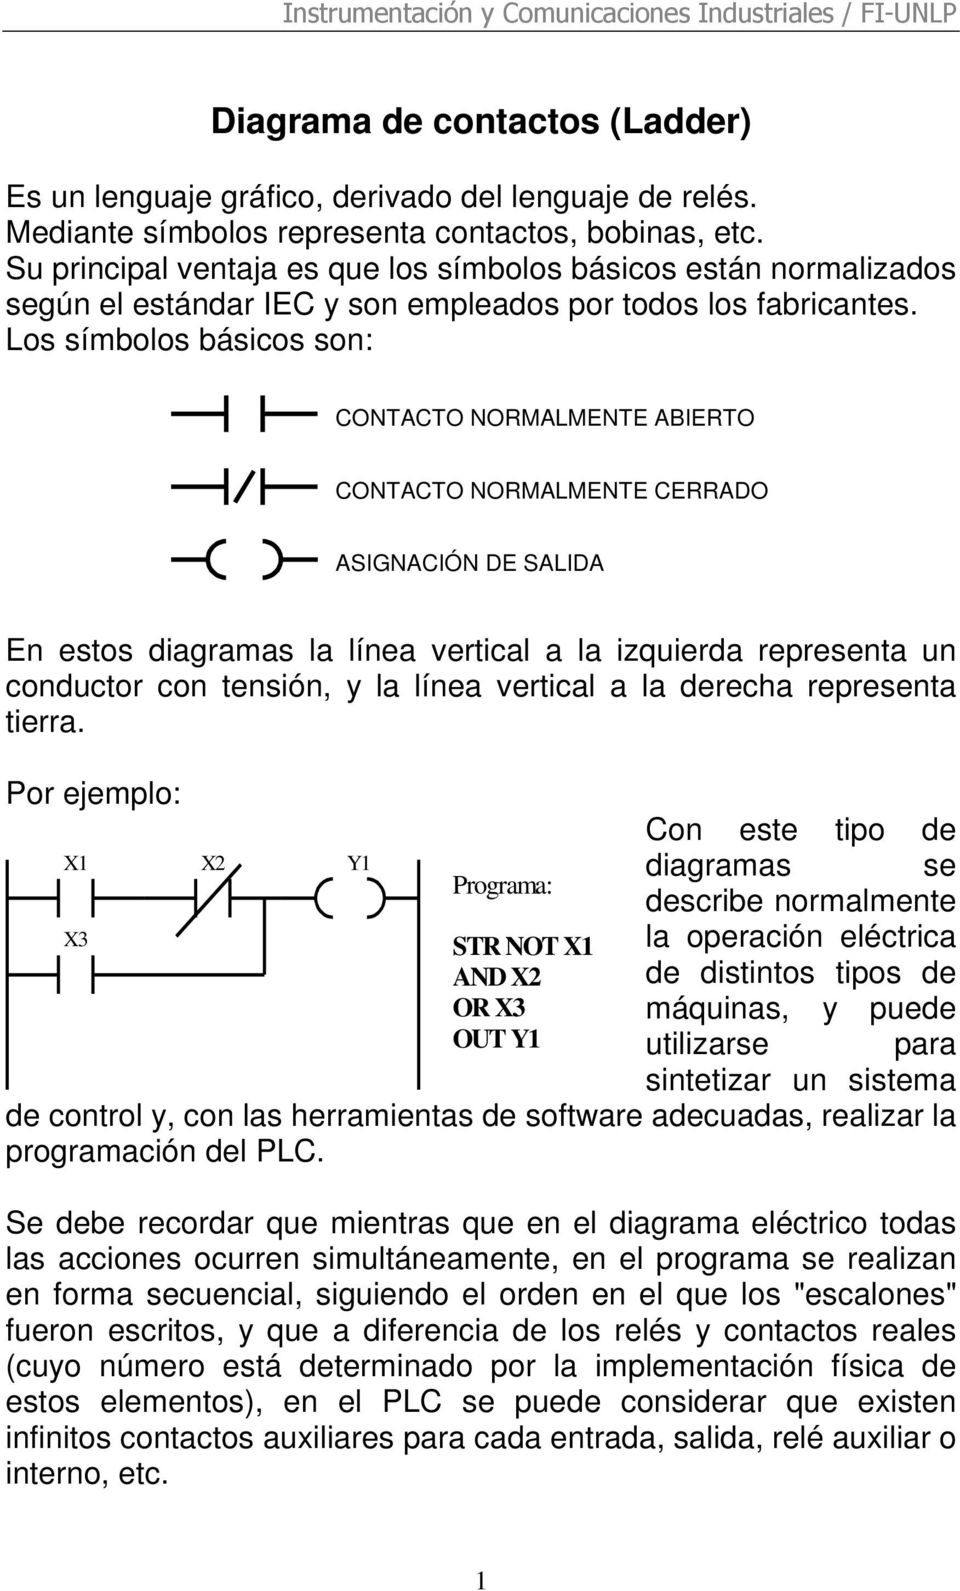 Los símbolos básicos son: CONTACTO NORMALMENTE ABIERTO CONTACTO NORMALMENTE CERRADO ASIGNACIÓN DE SALIDA En estos diagramas la línea vertical a la izquierda representa un conductor con tensión, y la